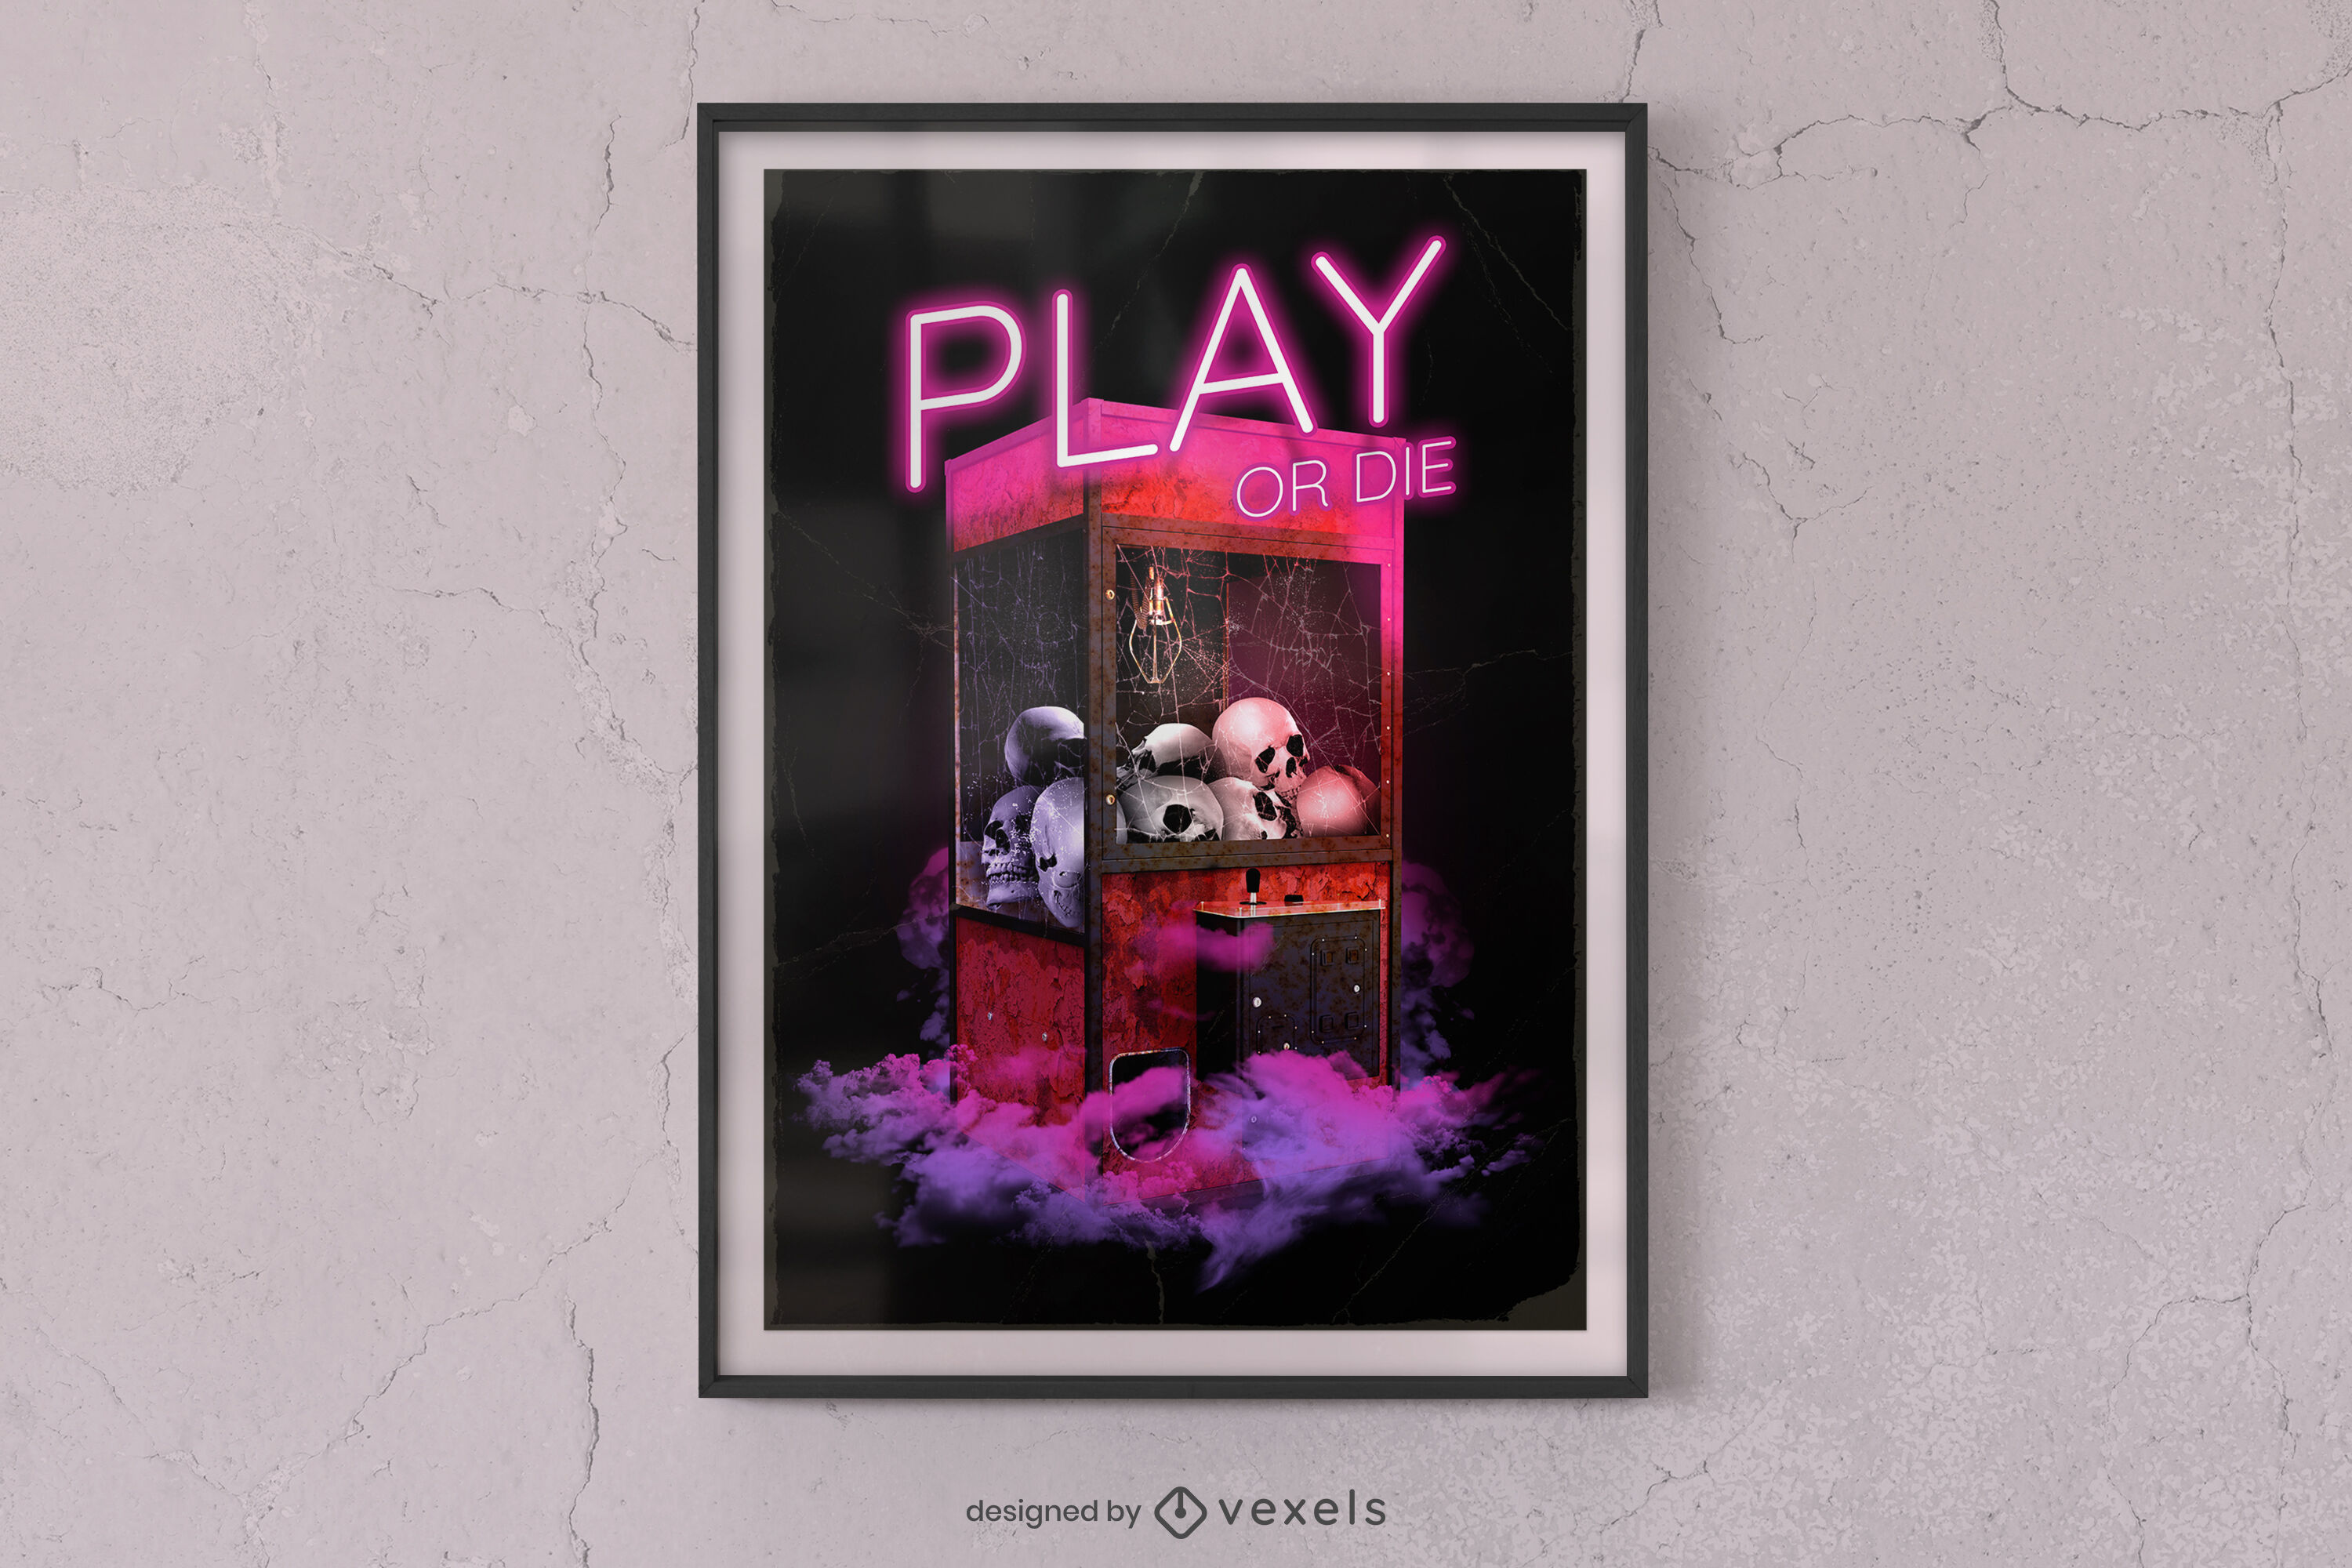 Play or die Halloween poster design